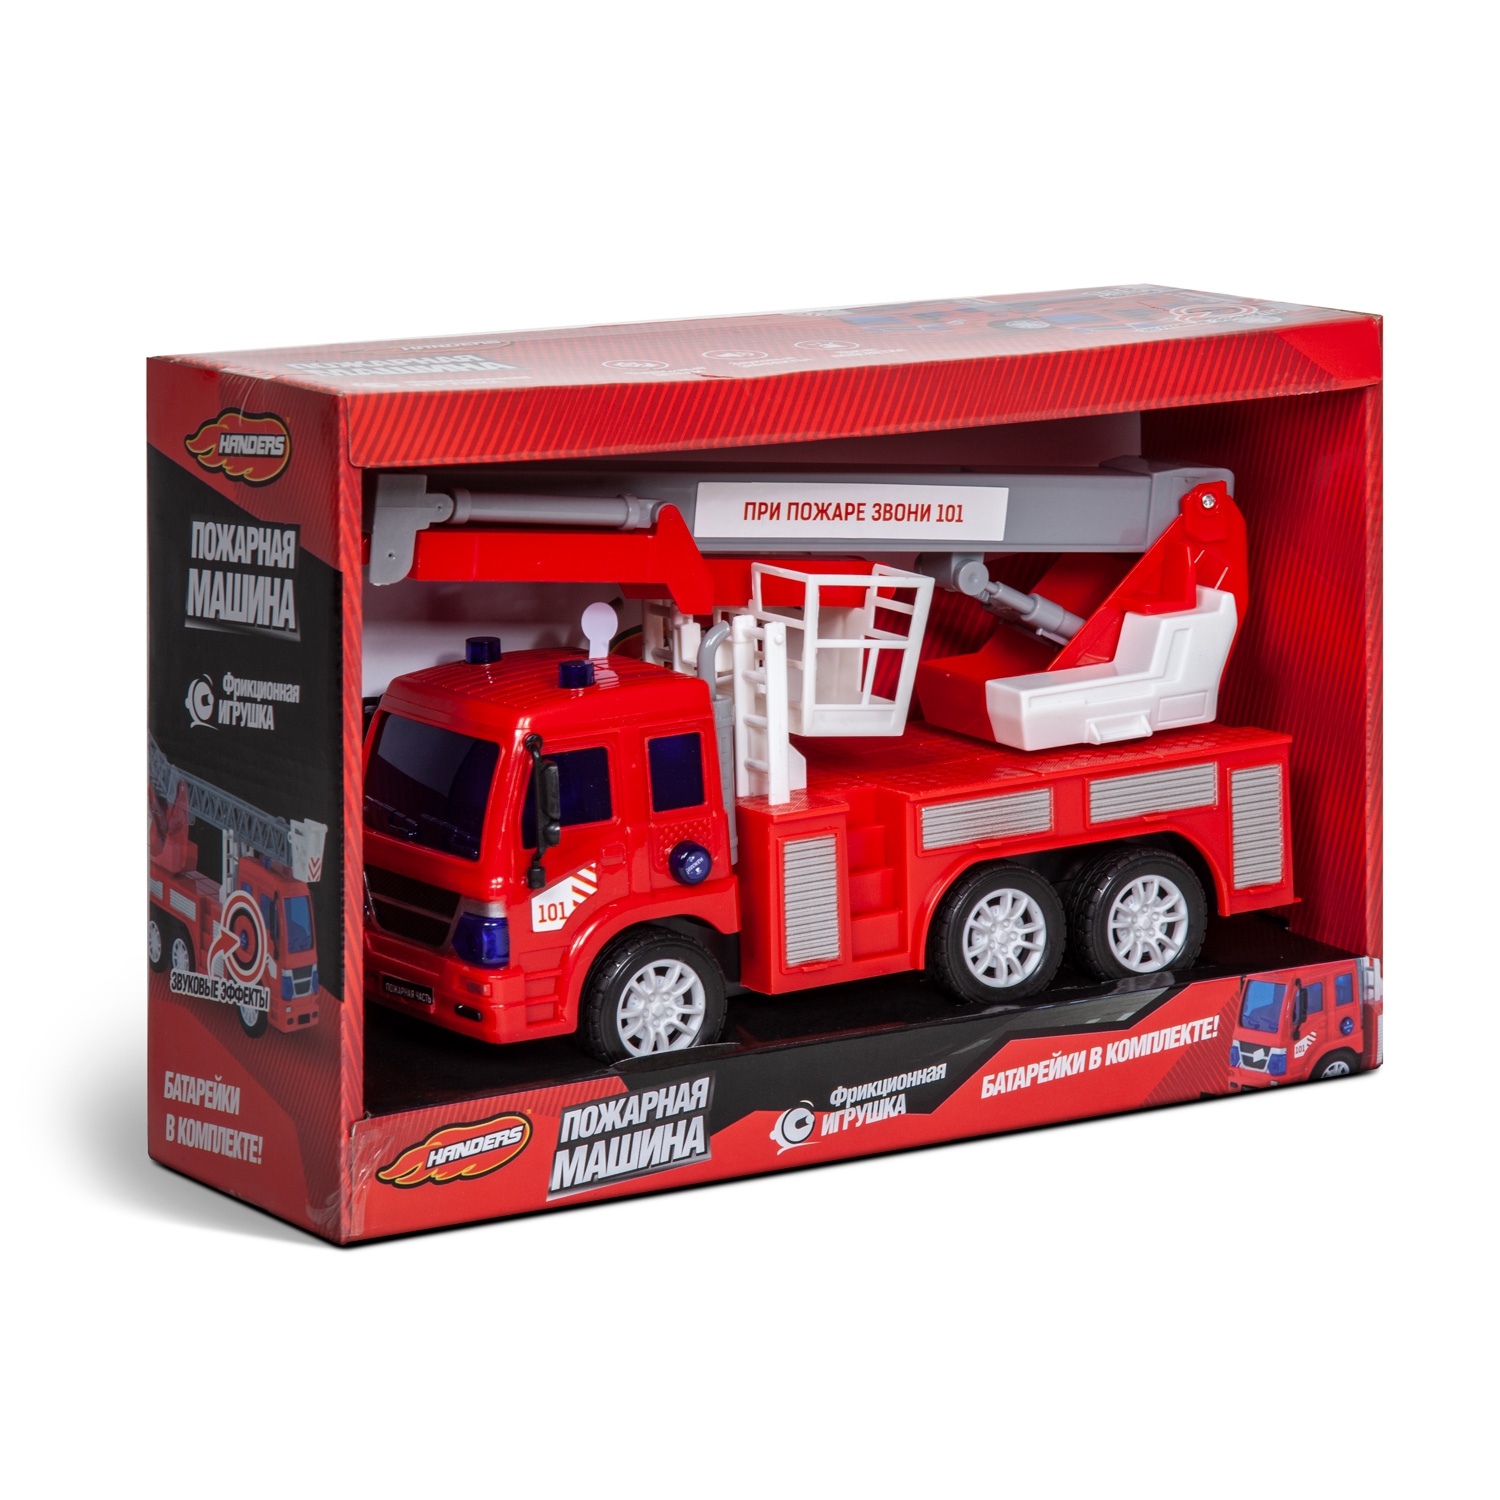 Фрикционная игрушка Handers Пожарная машина: Автовышка (26 см, свет, звук, подвиж. детали)